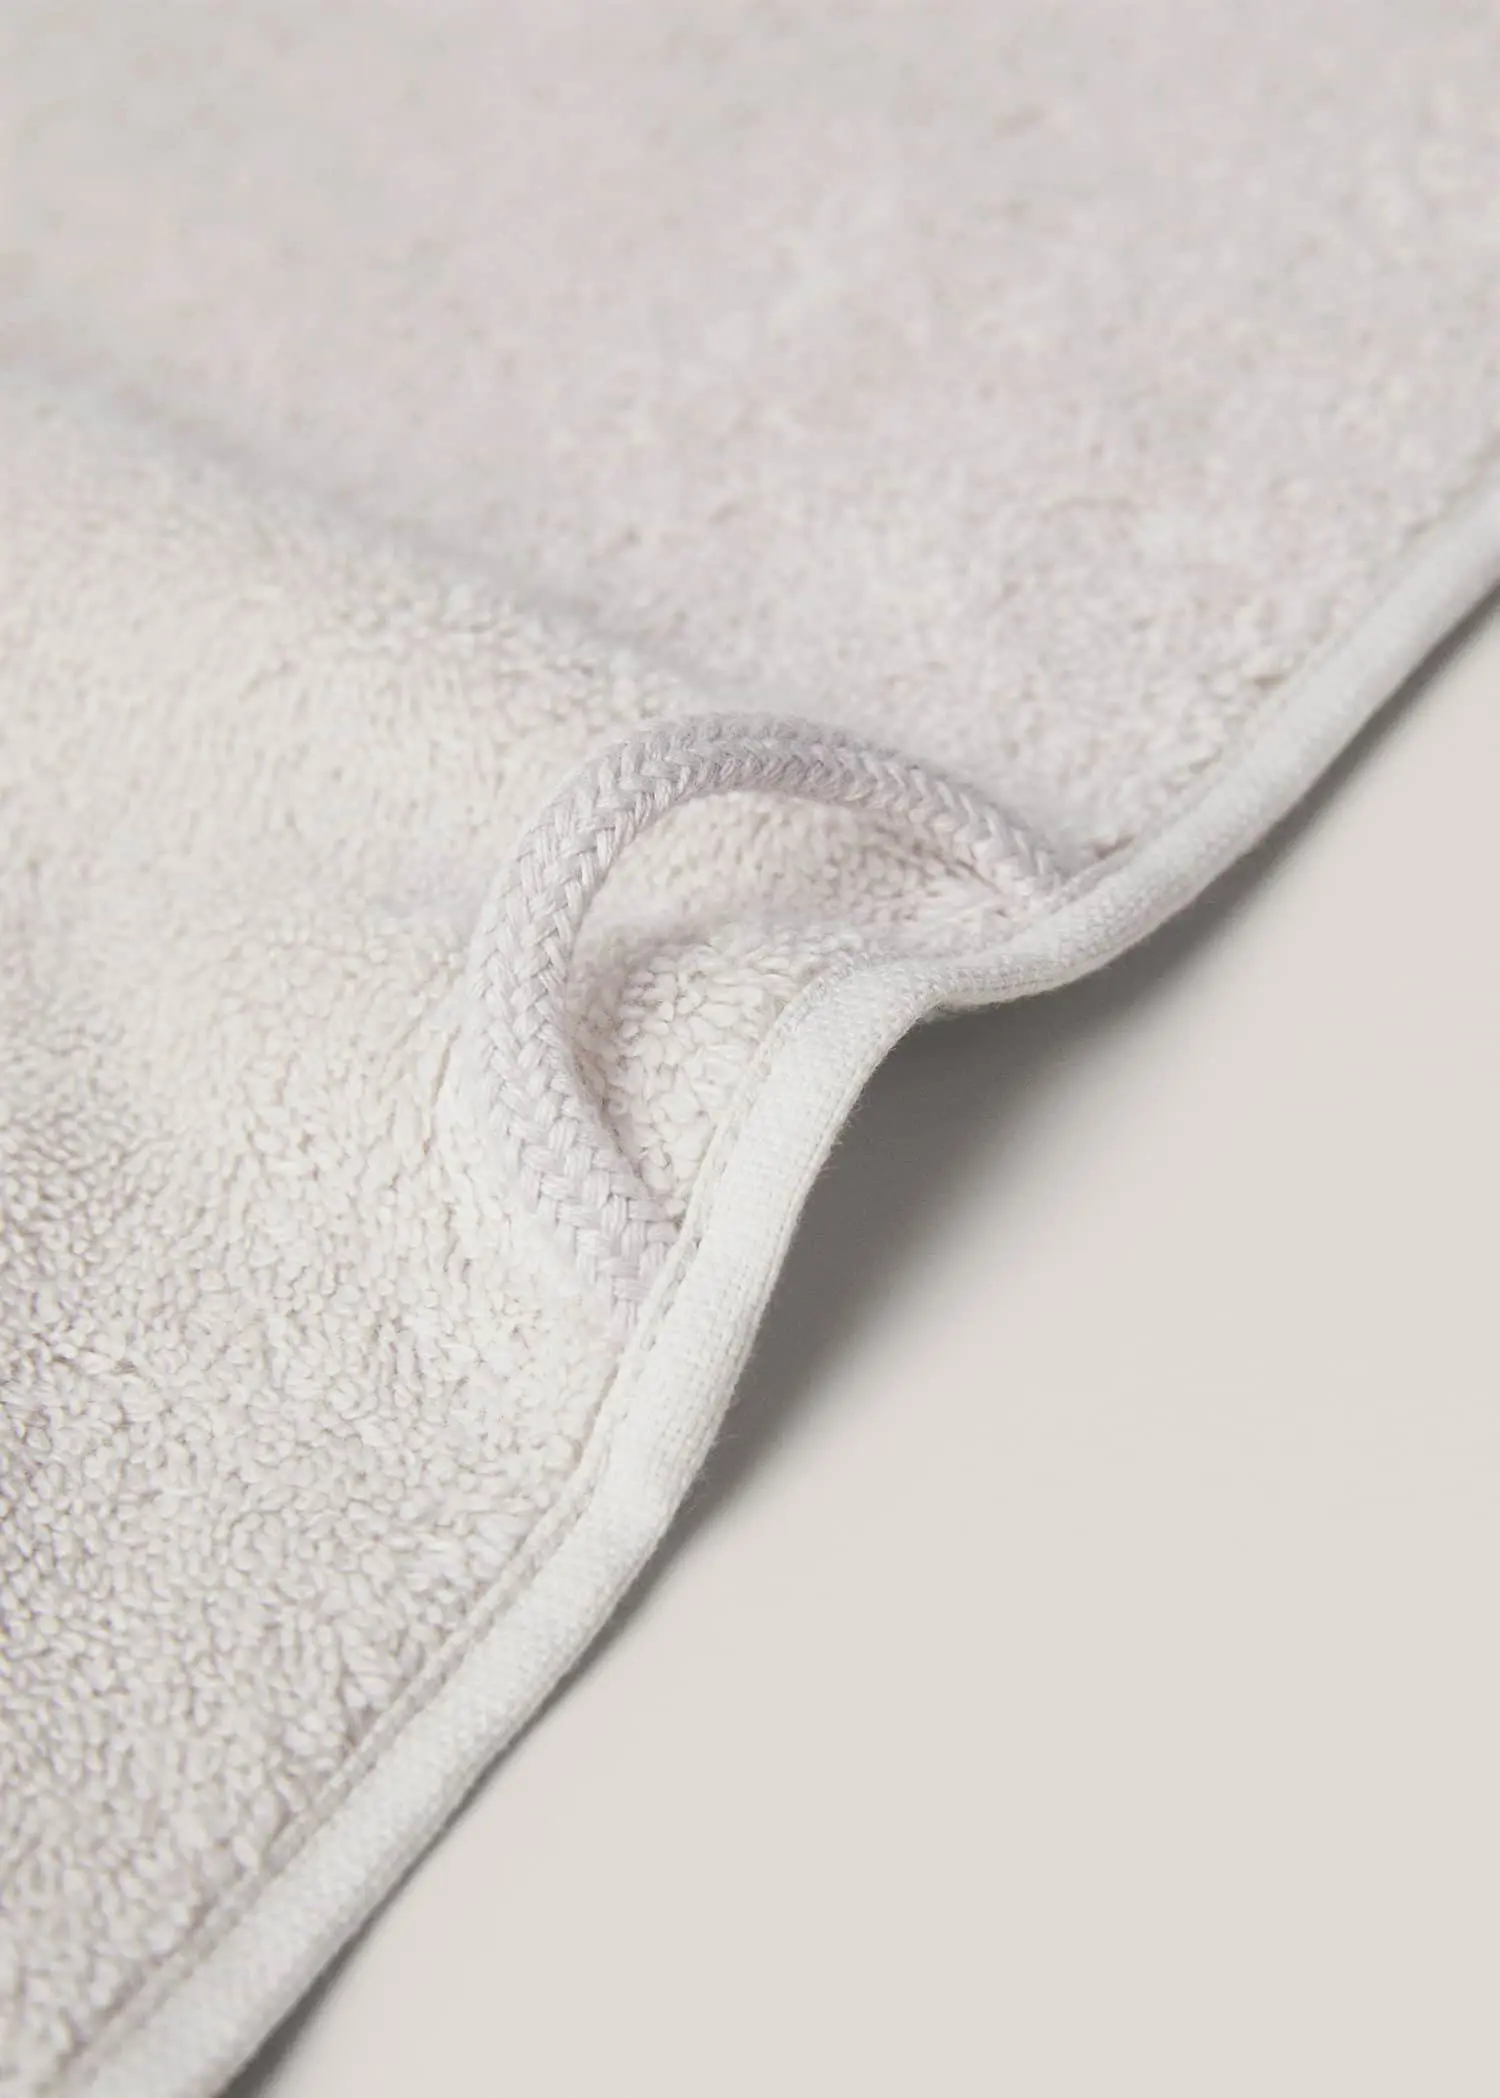 Mango 600gr/m2 cotton face towel 30x50cm. 3